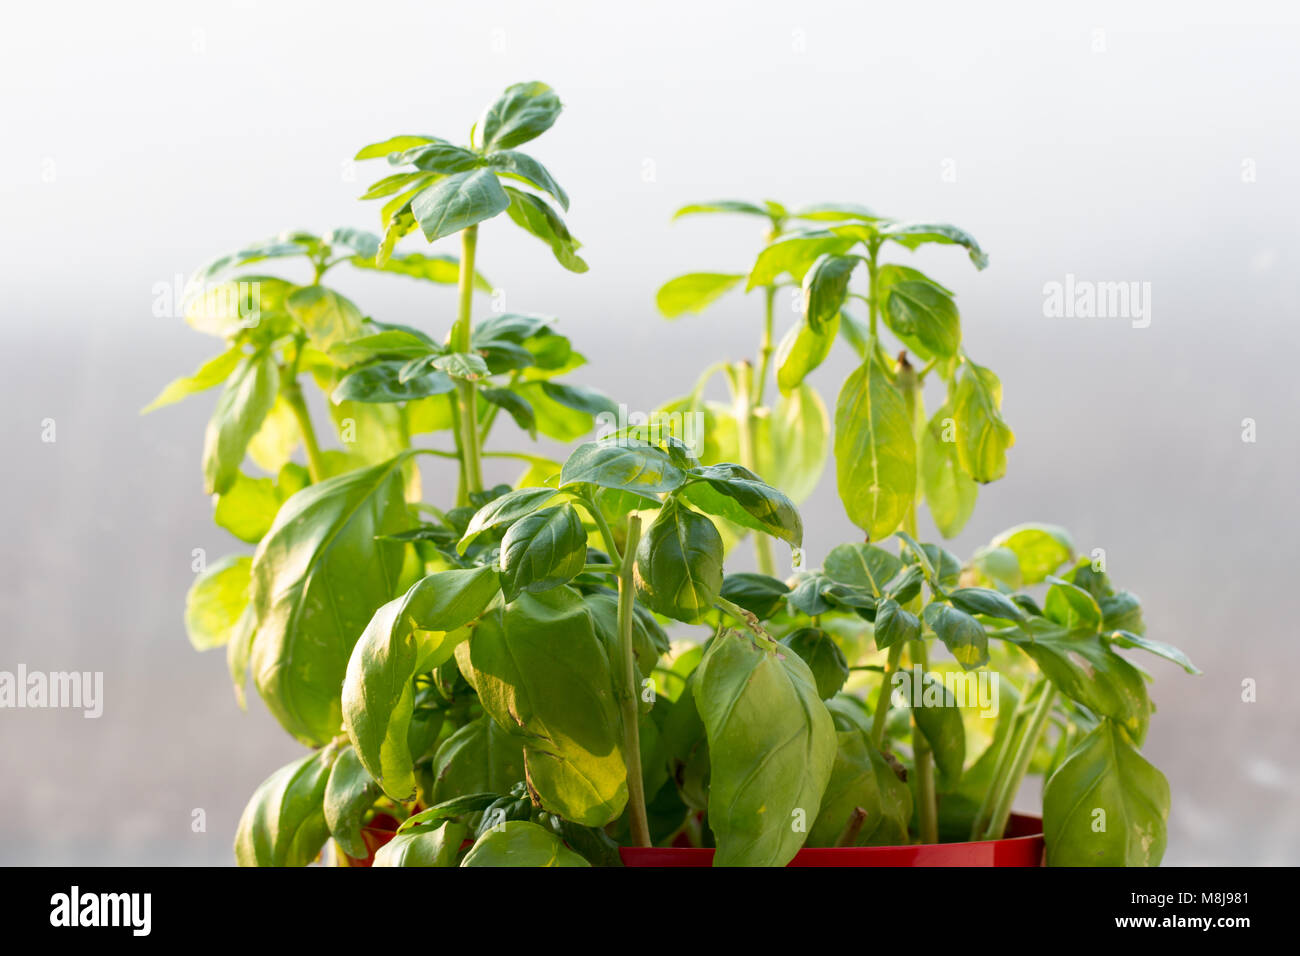 growing basil plant closeup Stock Photo